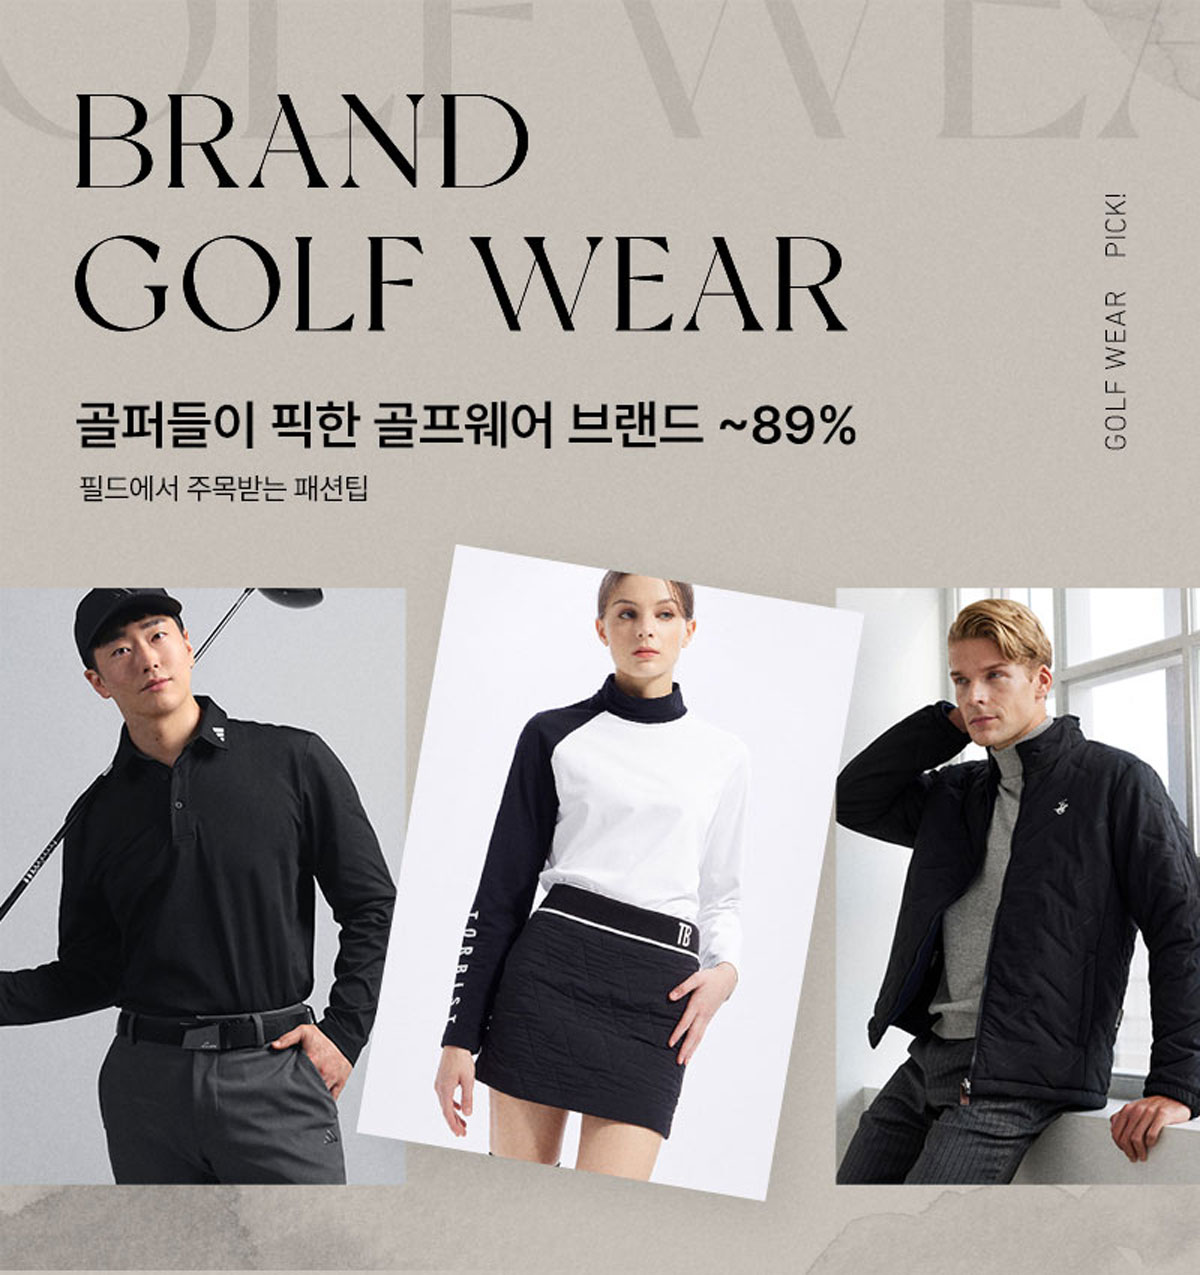 brand_golfwear_23_kd_01.jpg